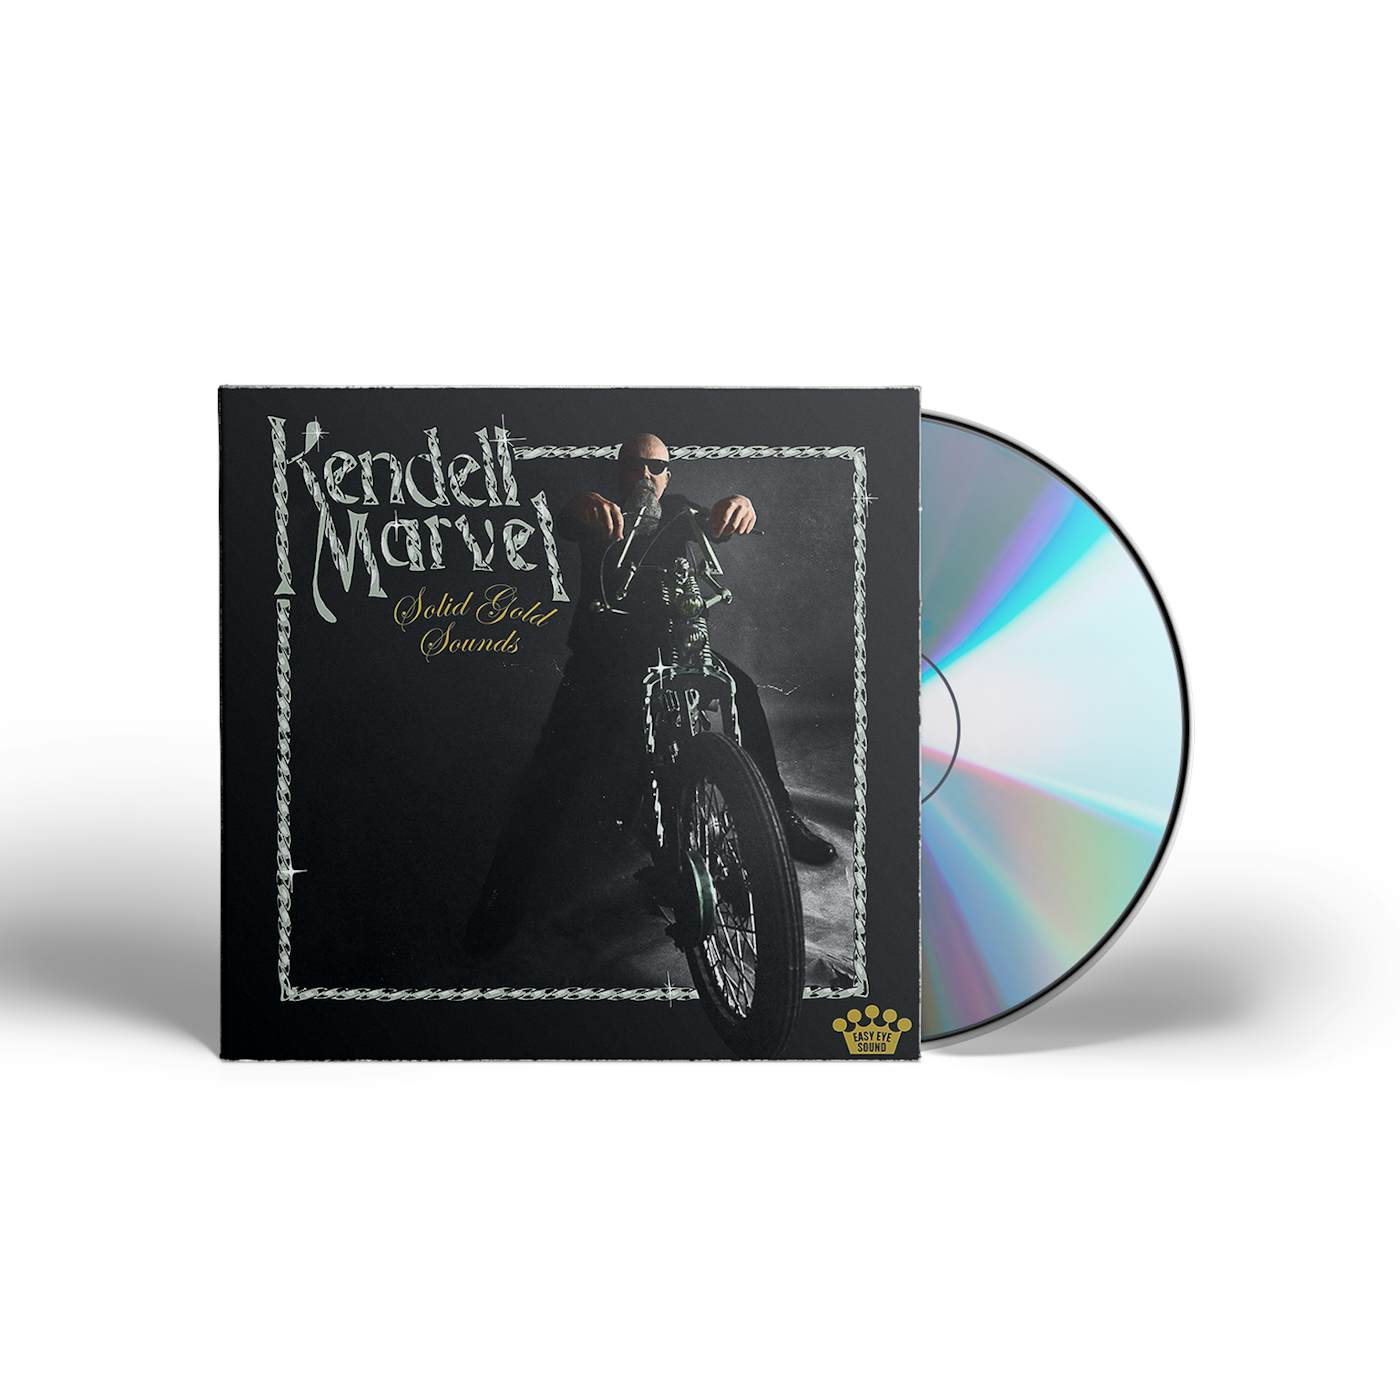 Kendell Marvel Solid Gold Sounds [CD]